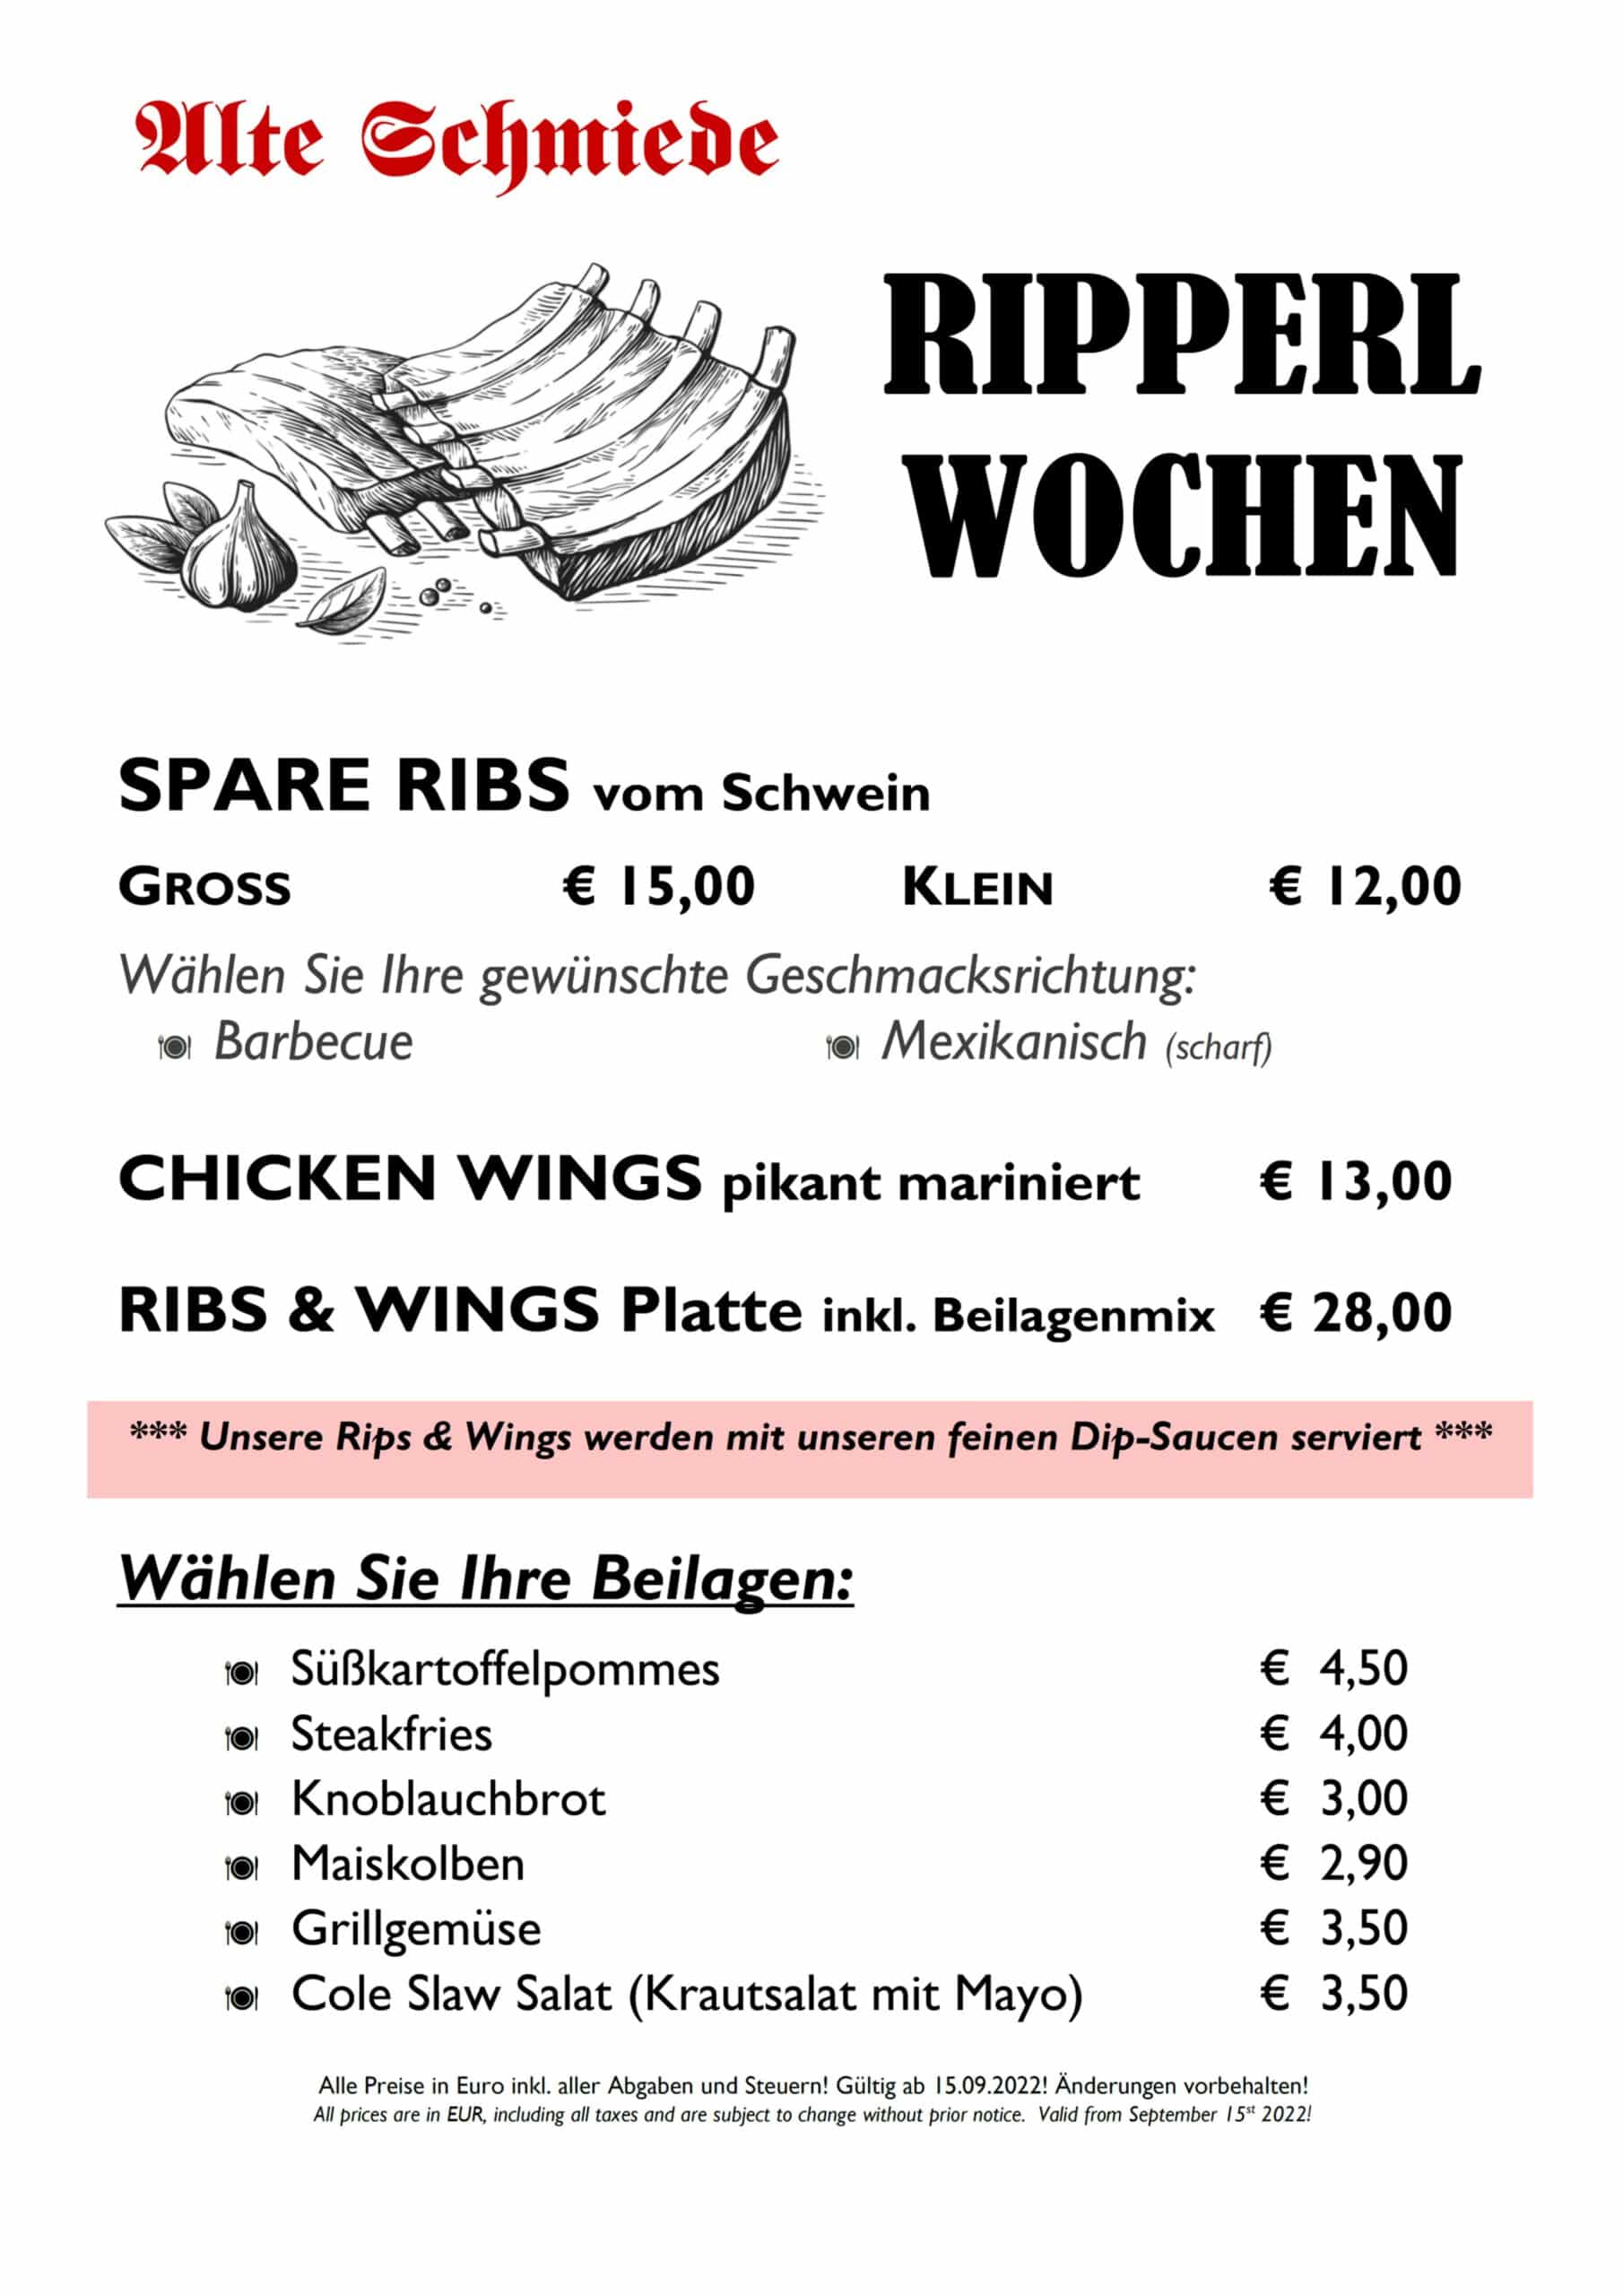 Speisekarte Ripperl Wochen Spare Ribs Restaurant Alte Schmiede Rust Neusiedler See Burgenland Drescher Touristik Drescher Line September 2022